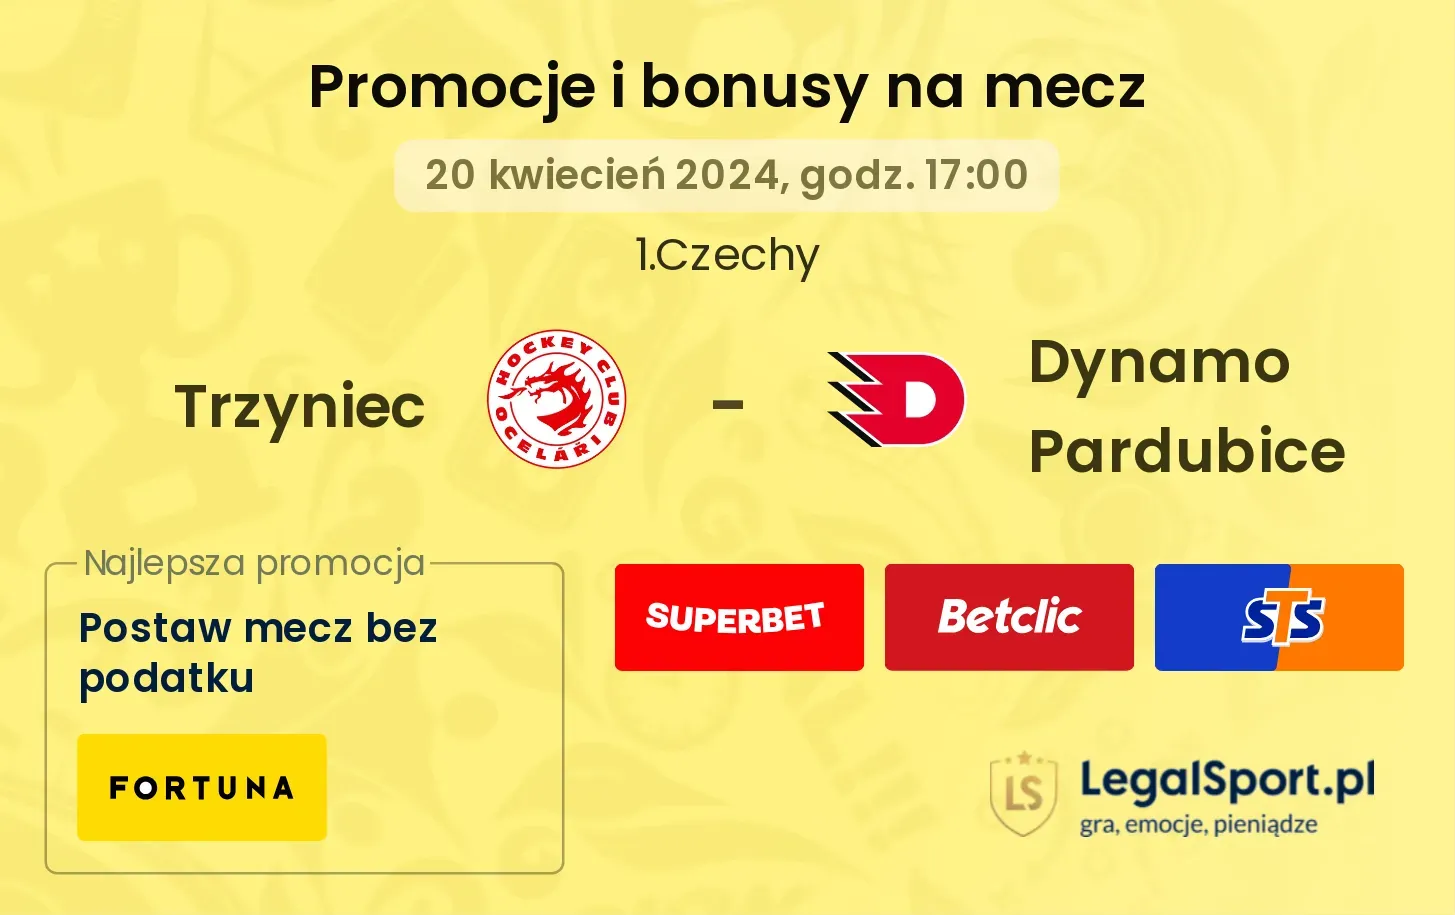 Trzyniec - Dynamo Pardubice promocje bonusy na mecz